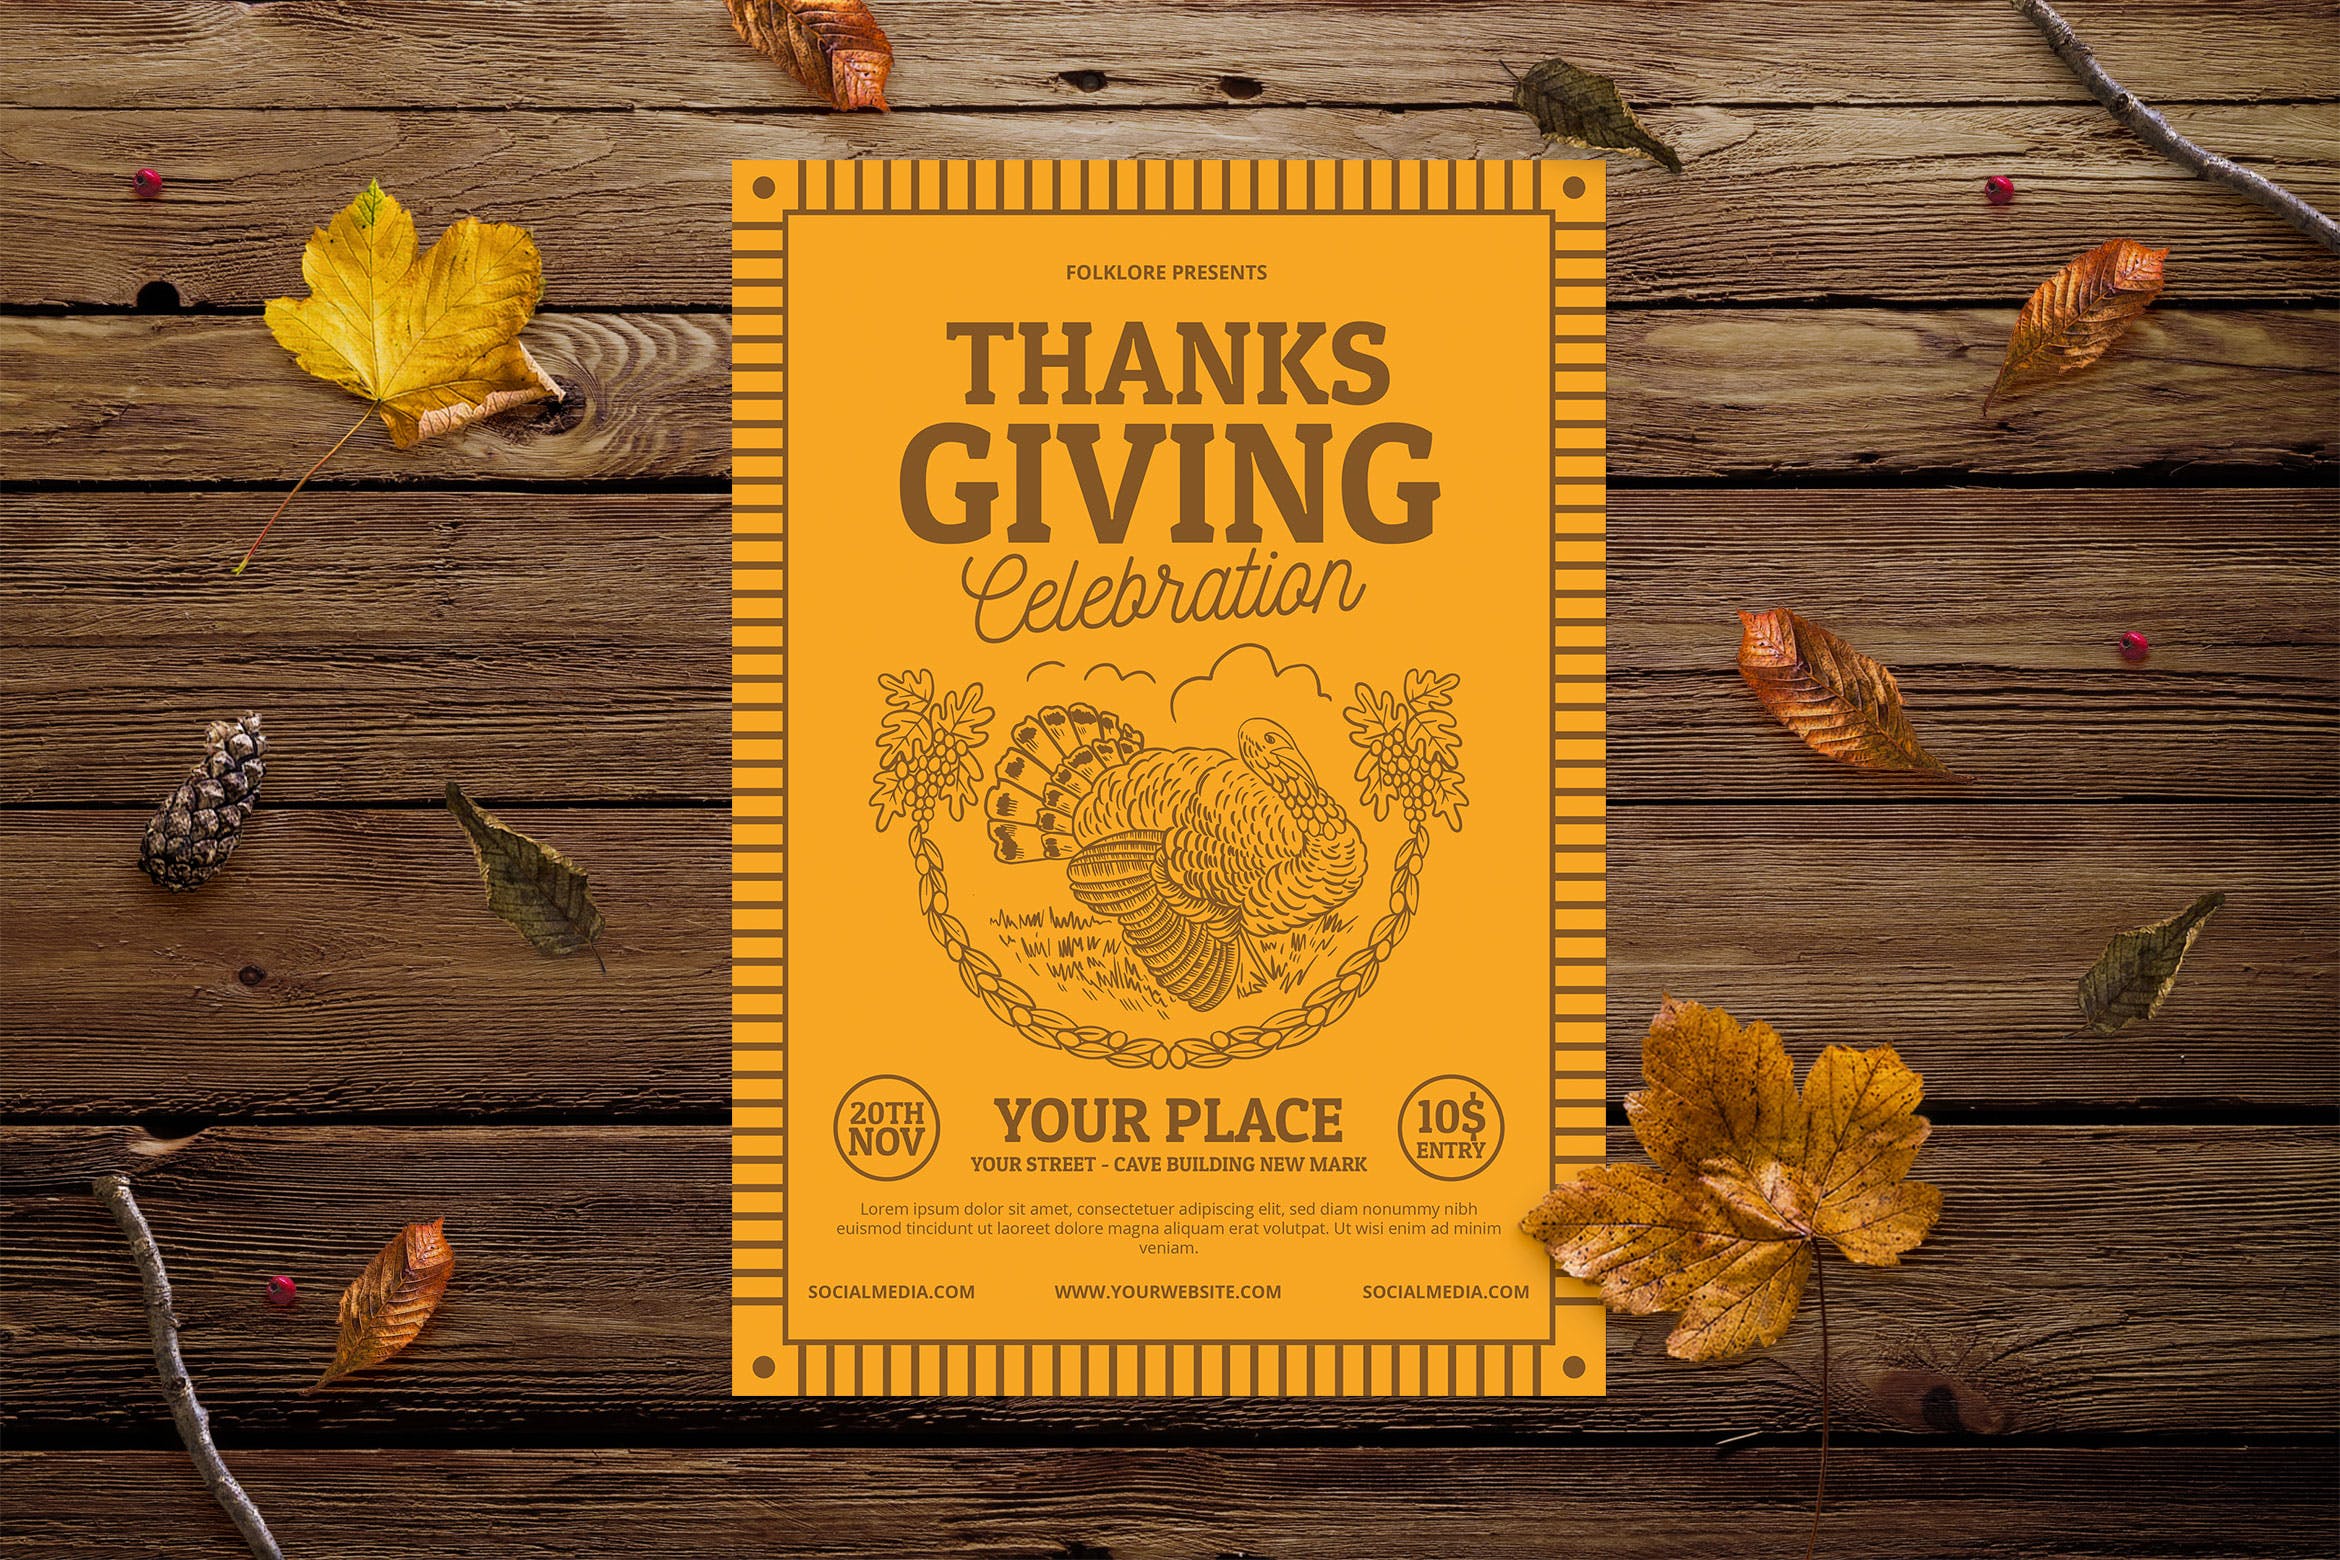 复古设计风格感恩节活动邀请海报设计模板 Vintage Thanksgiving Invitation插图